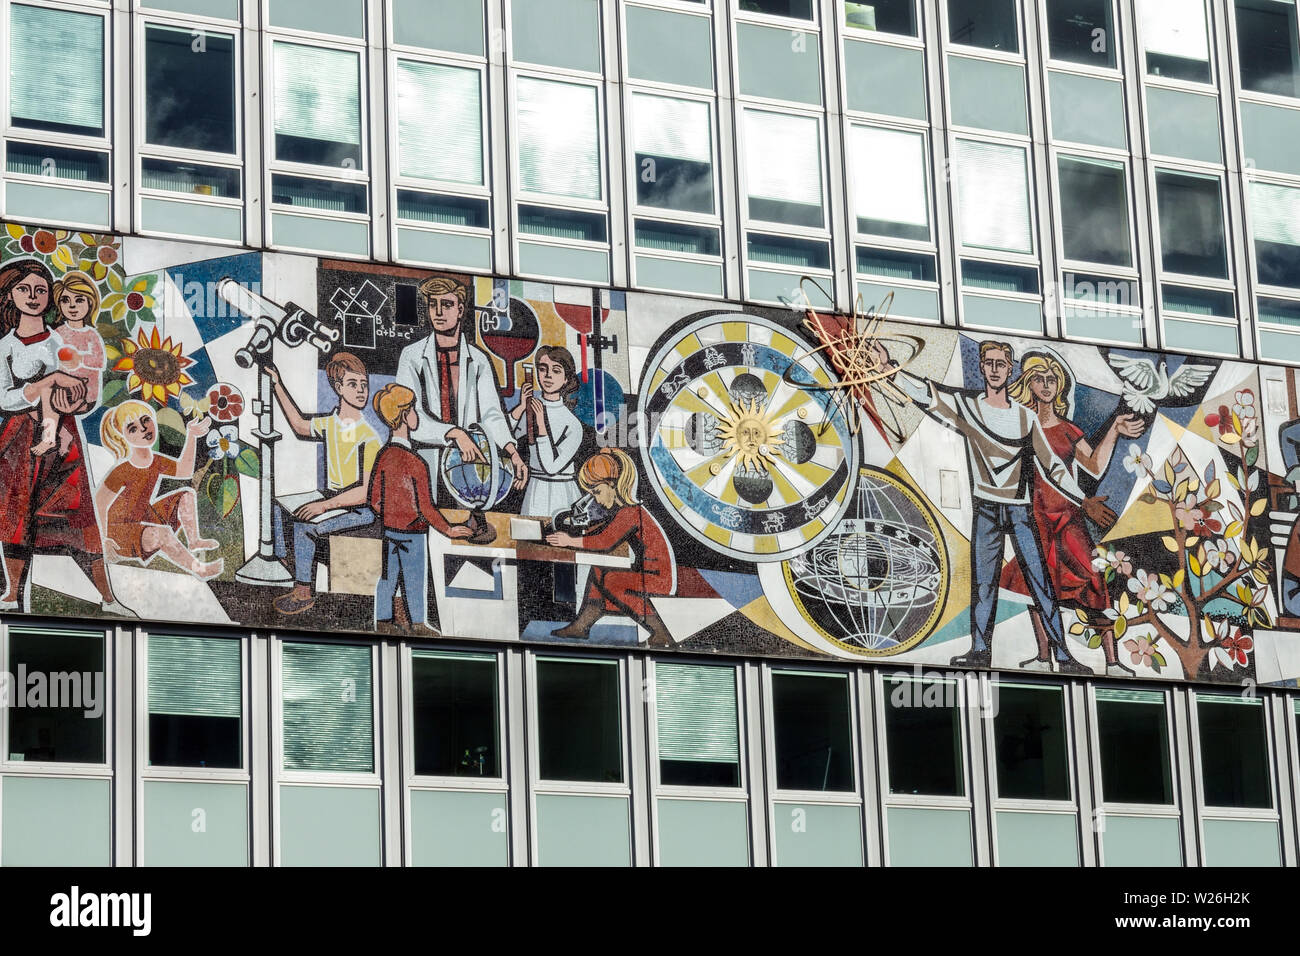 Mosaïque de réalisme socialiste sur un bâtiment des années 60, Haus des Lehrers, Mitte, Berlin, Allemagne Banque D'Images